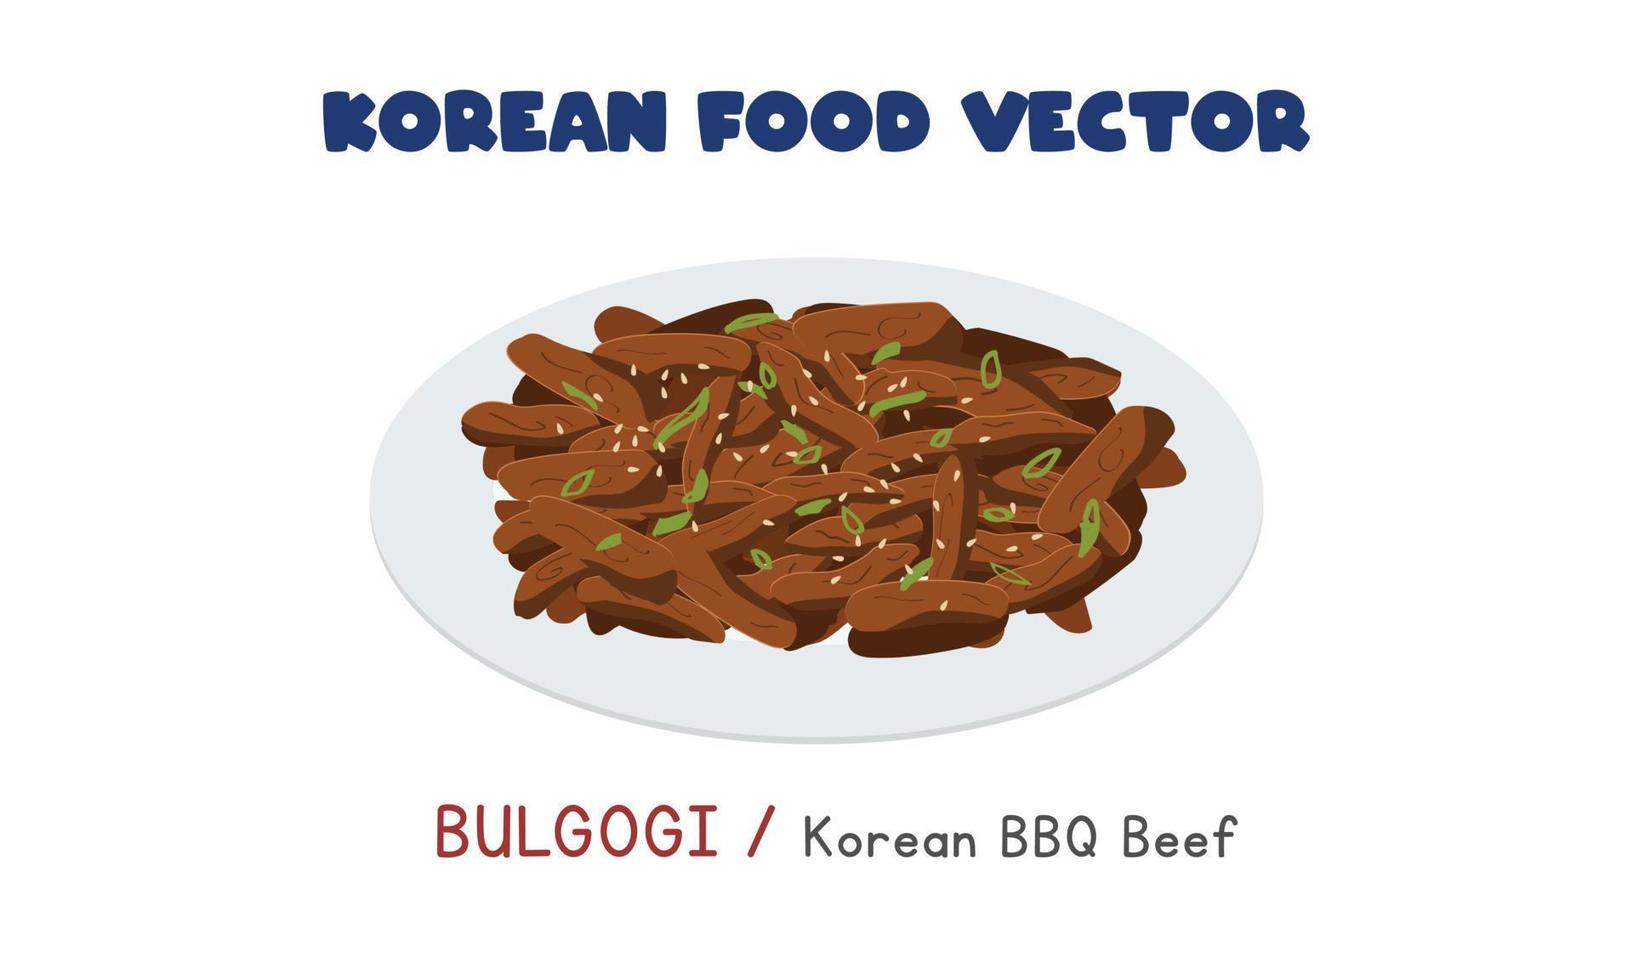 bulgogi coreano - ilustración de diseño de vector plano de carne de bbq coreana, estilo de dibujos animados de imágenes prediseñadas. comida asiática. Cocina coreana. comida coreana